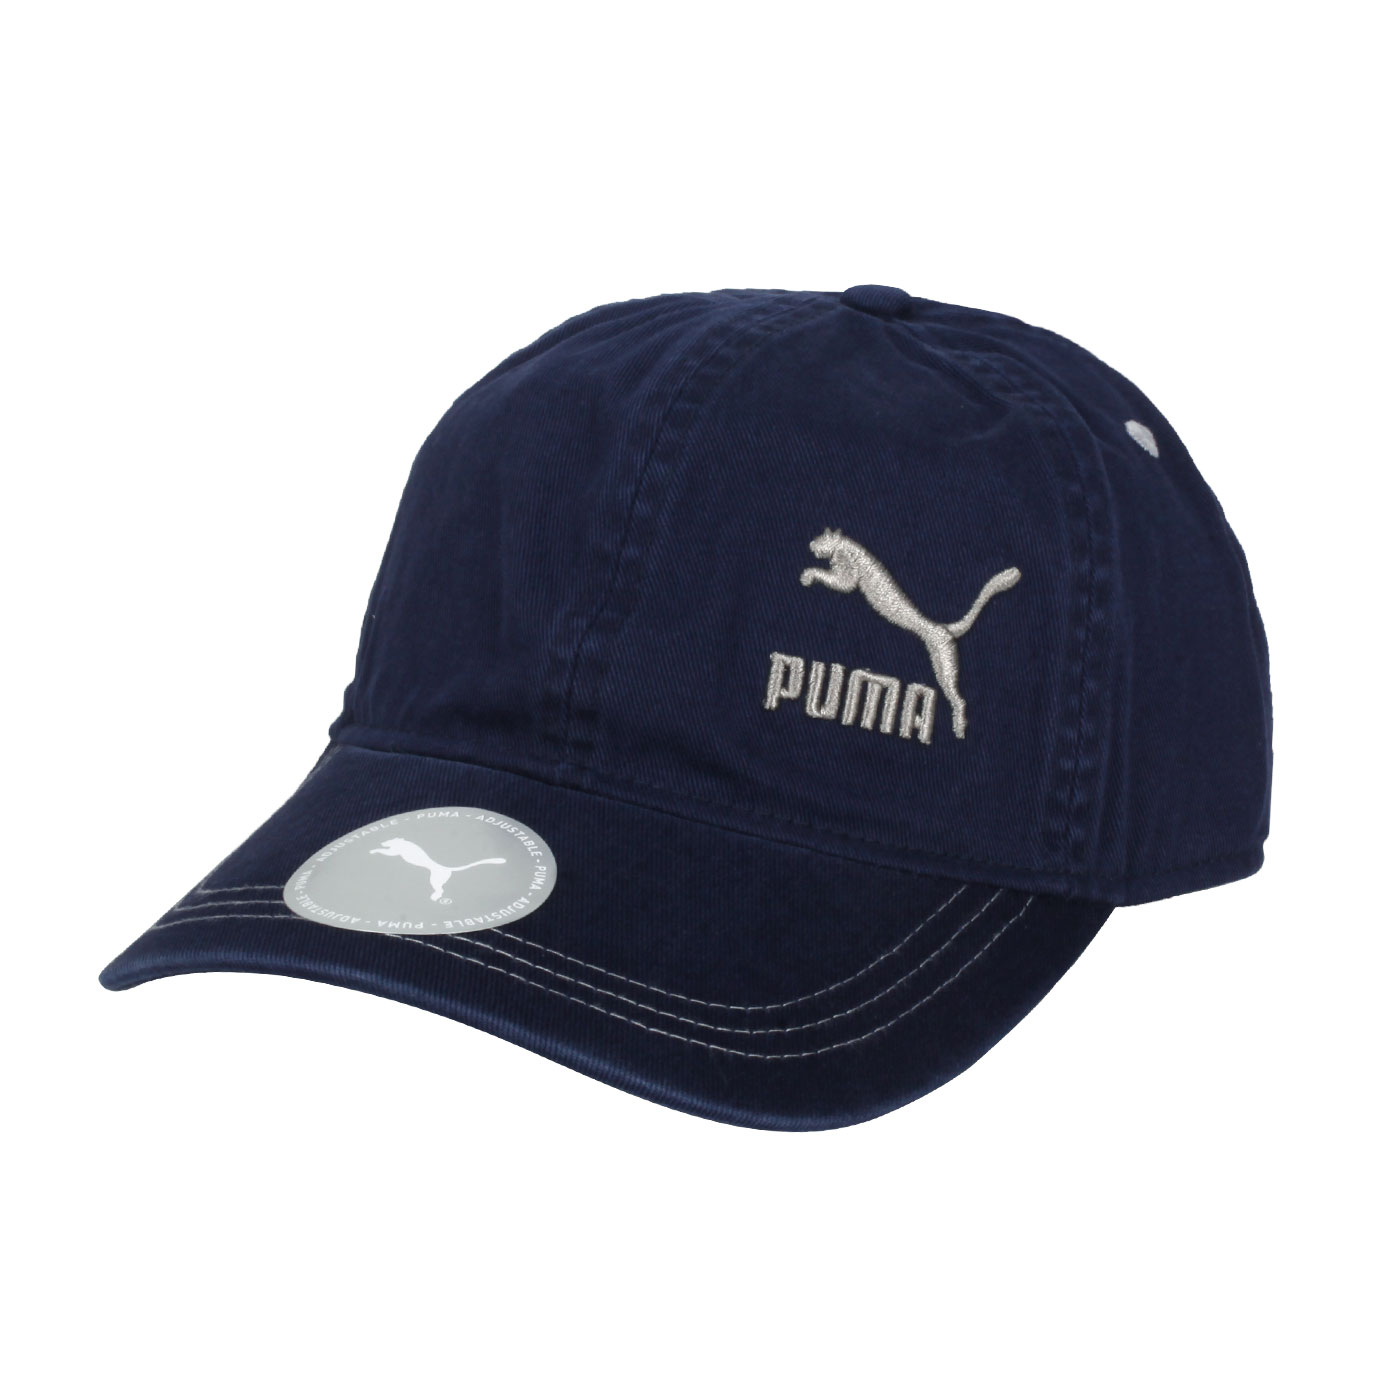 PUMA 流行系列棒球帽 02313705 - 丈青灰